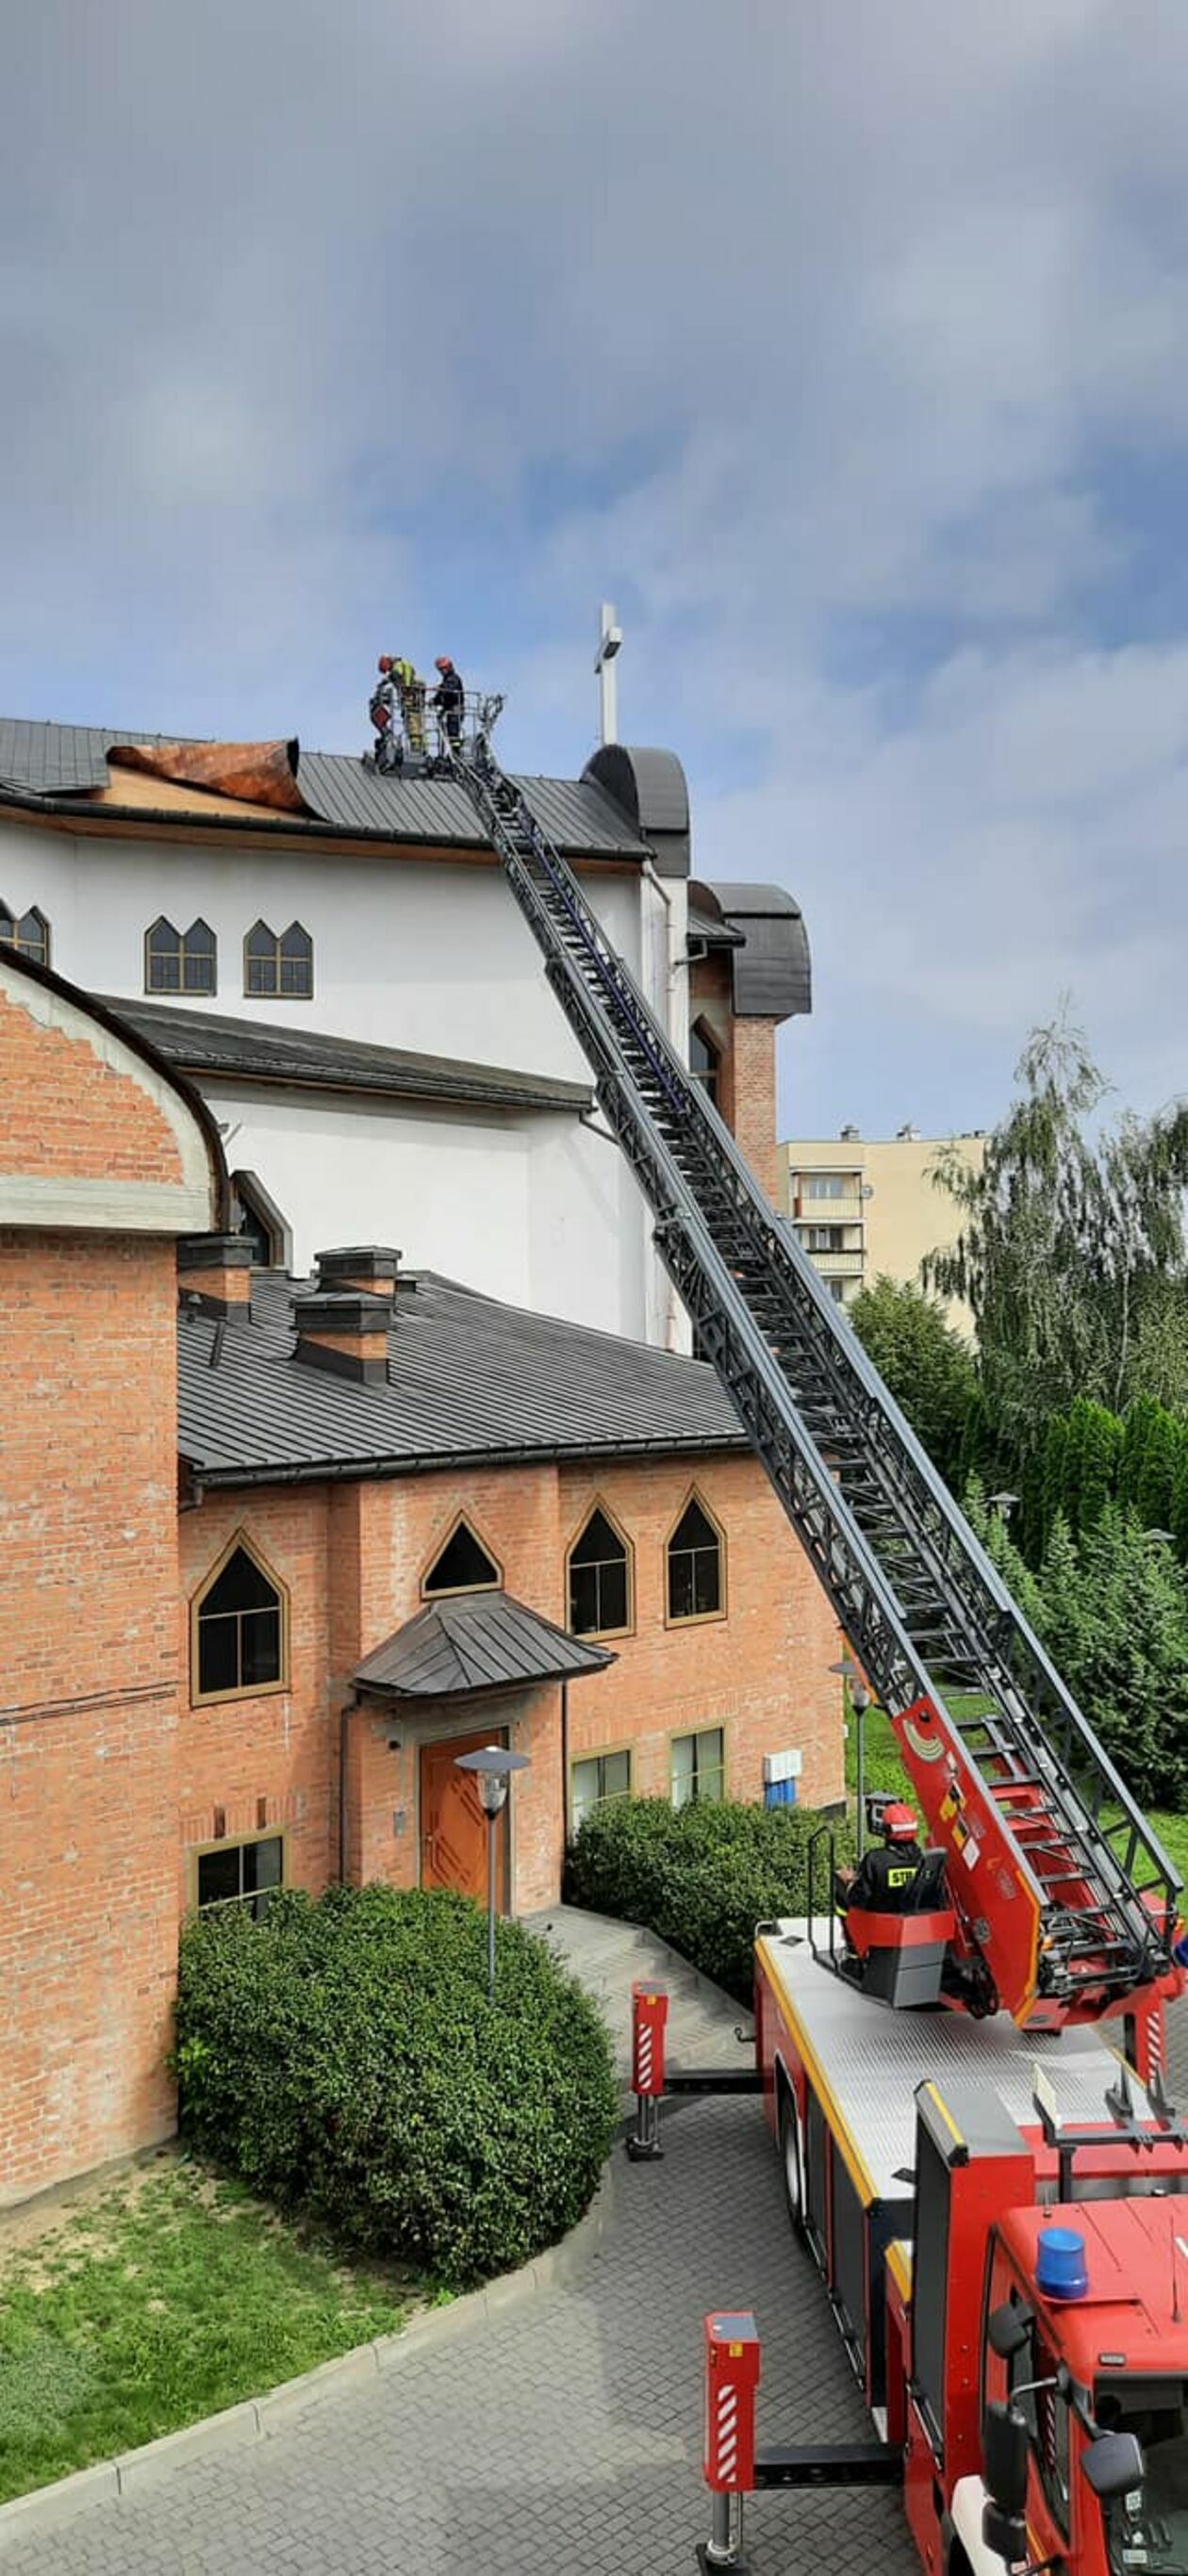  Po nawałnicy uszkodzony dach kościoła przy ul. Bazylianówka w Lublinie  - Autor: Marianie Lublin